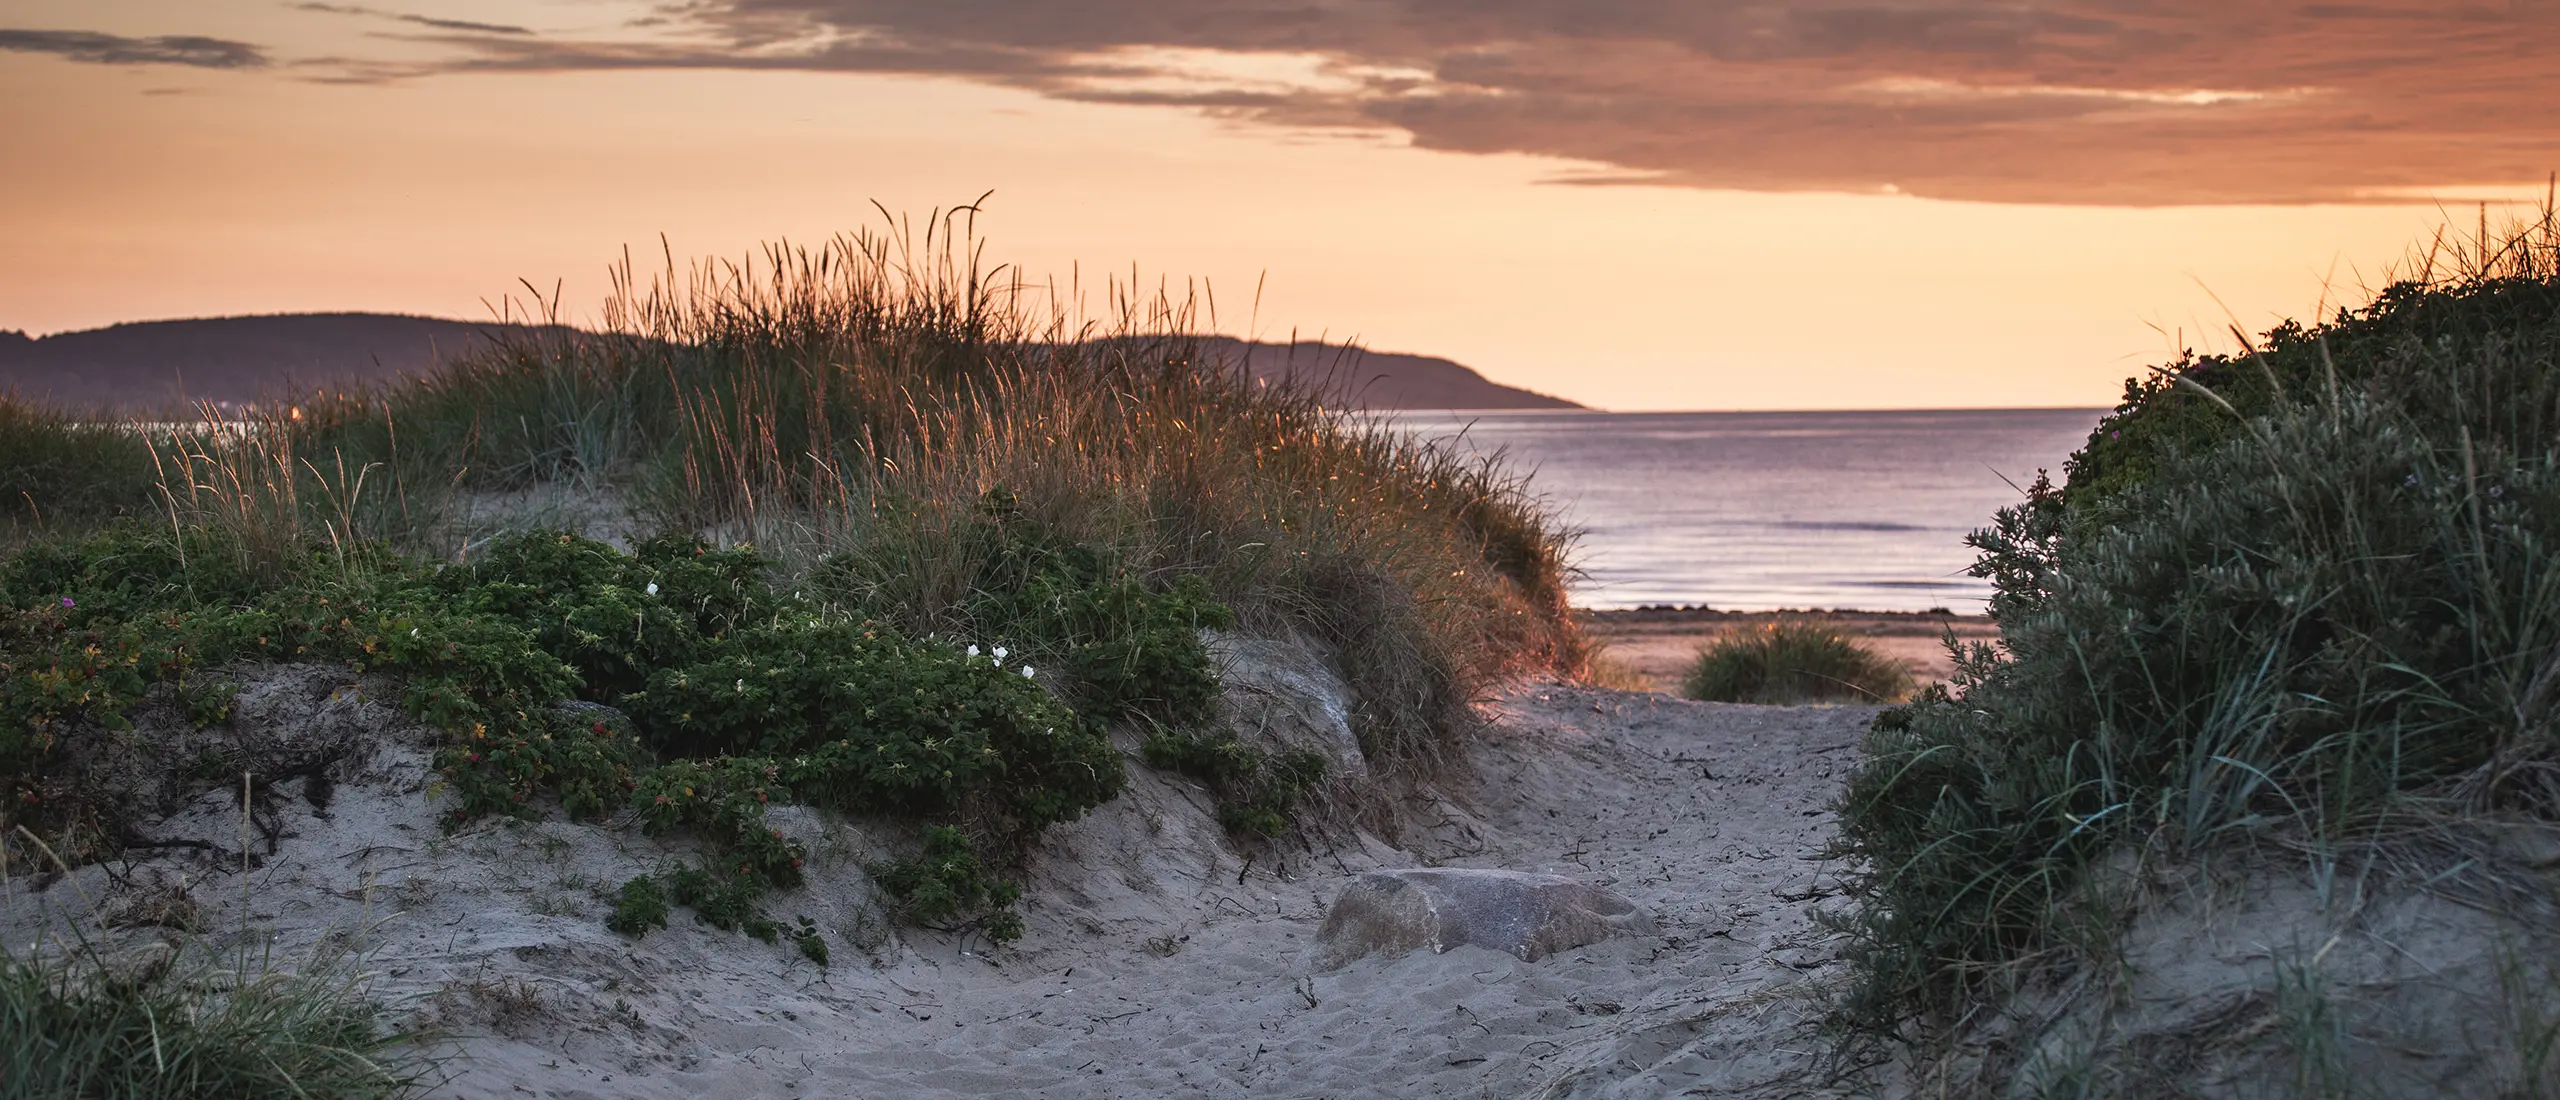 Sanddyner och hav i solnedgång.